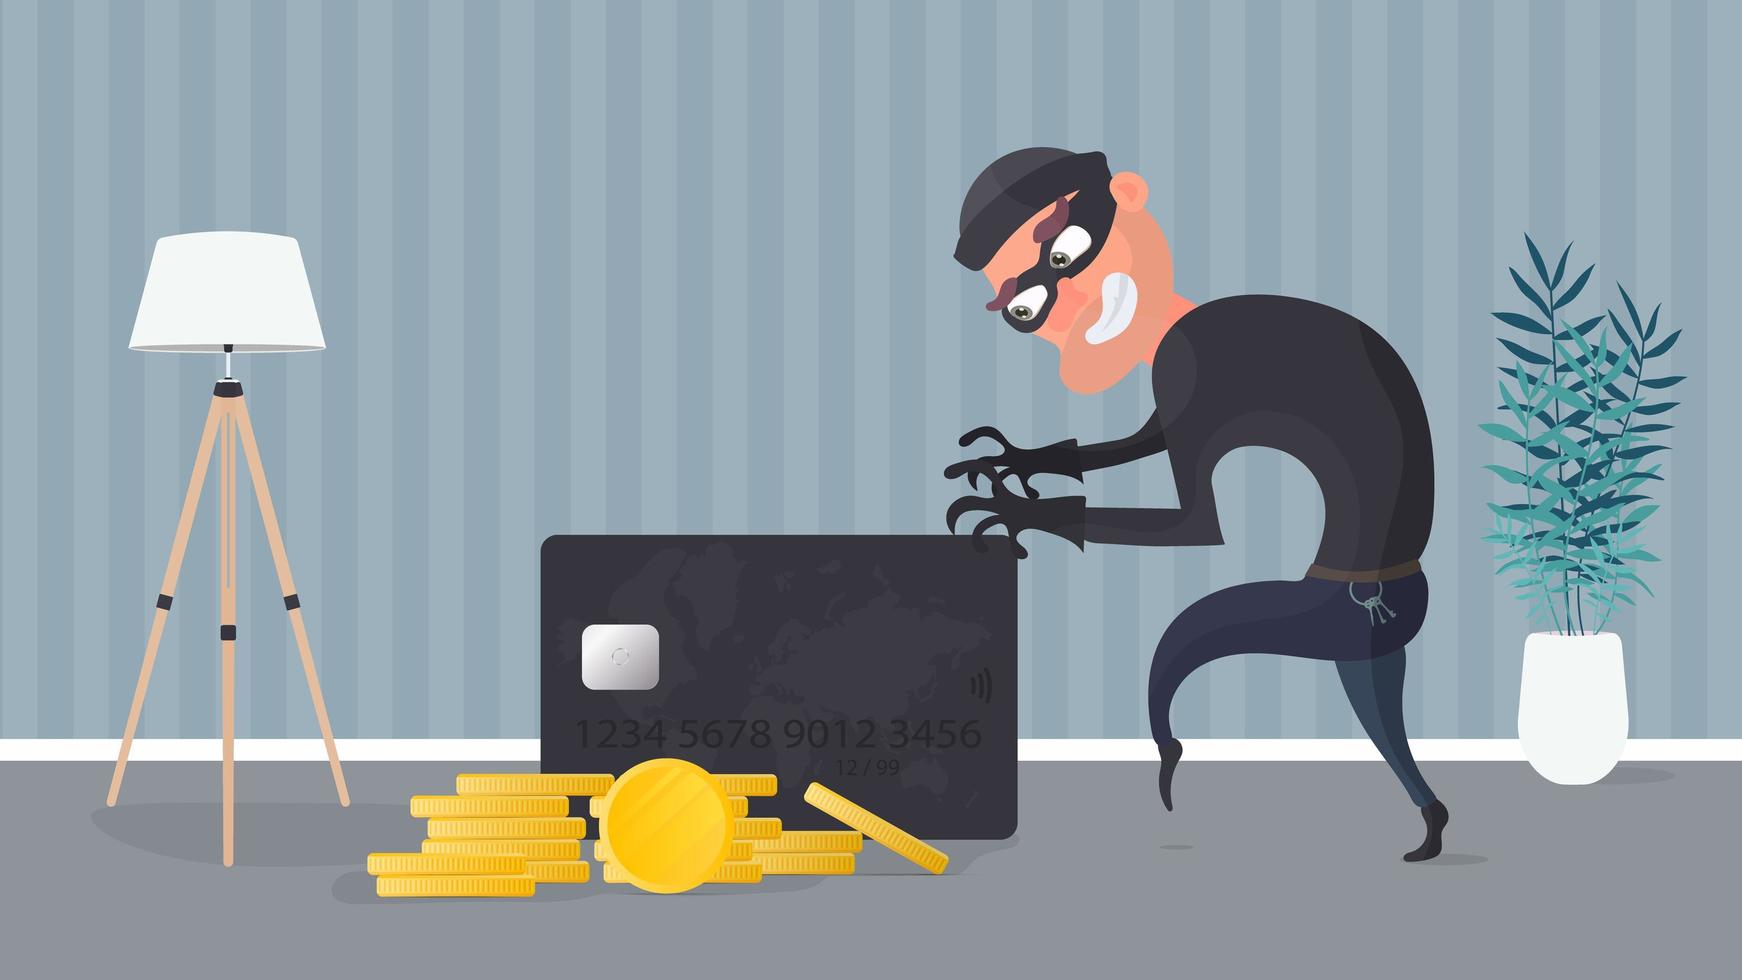 rånaren stjäl ett bankkort. tjuven försöker stjäla ett bankkort. bra för ämnet säkerhet, rån, bluff och bedrägeri. vektor. vektor